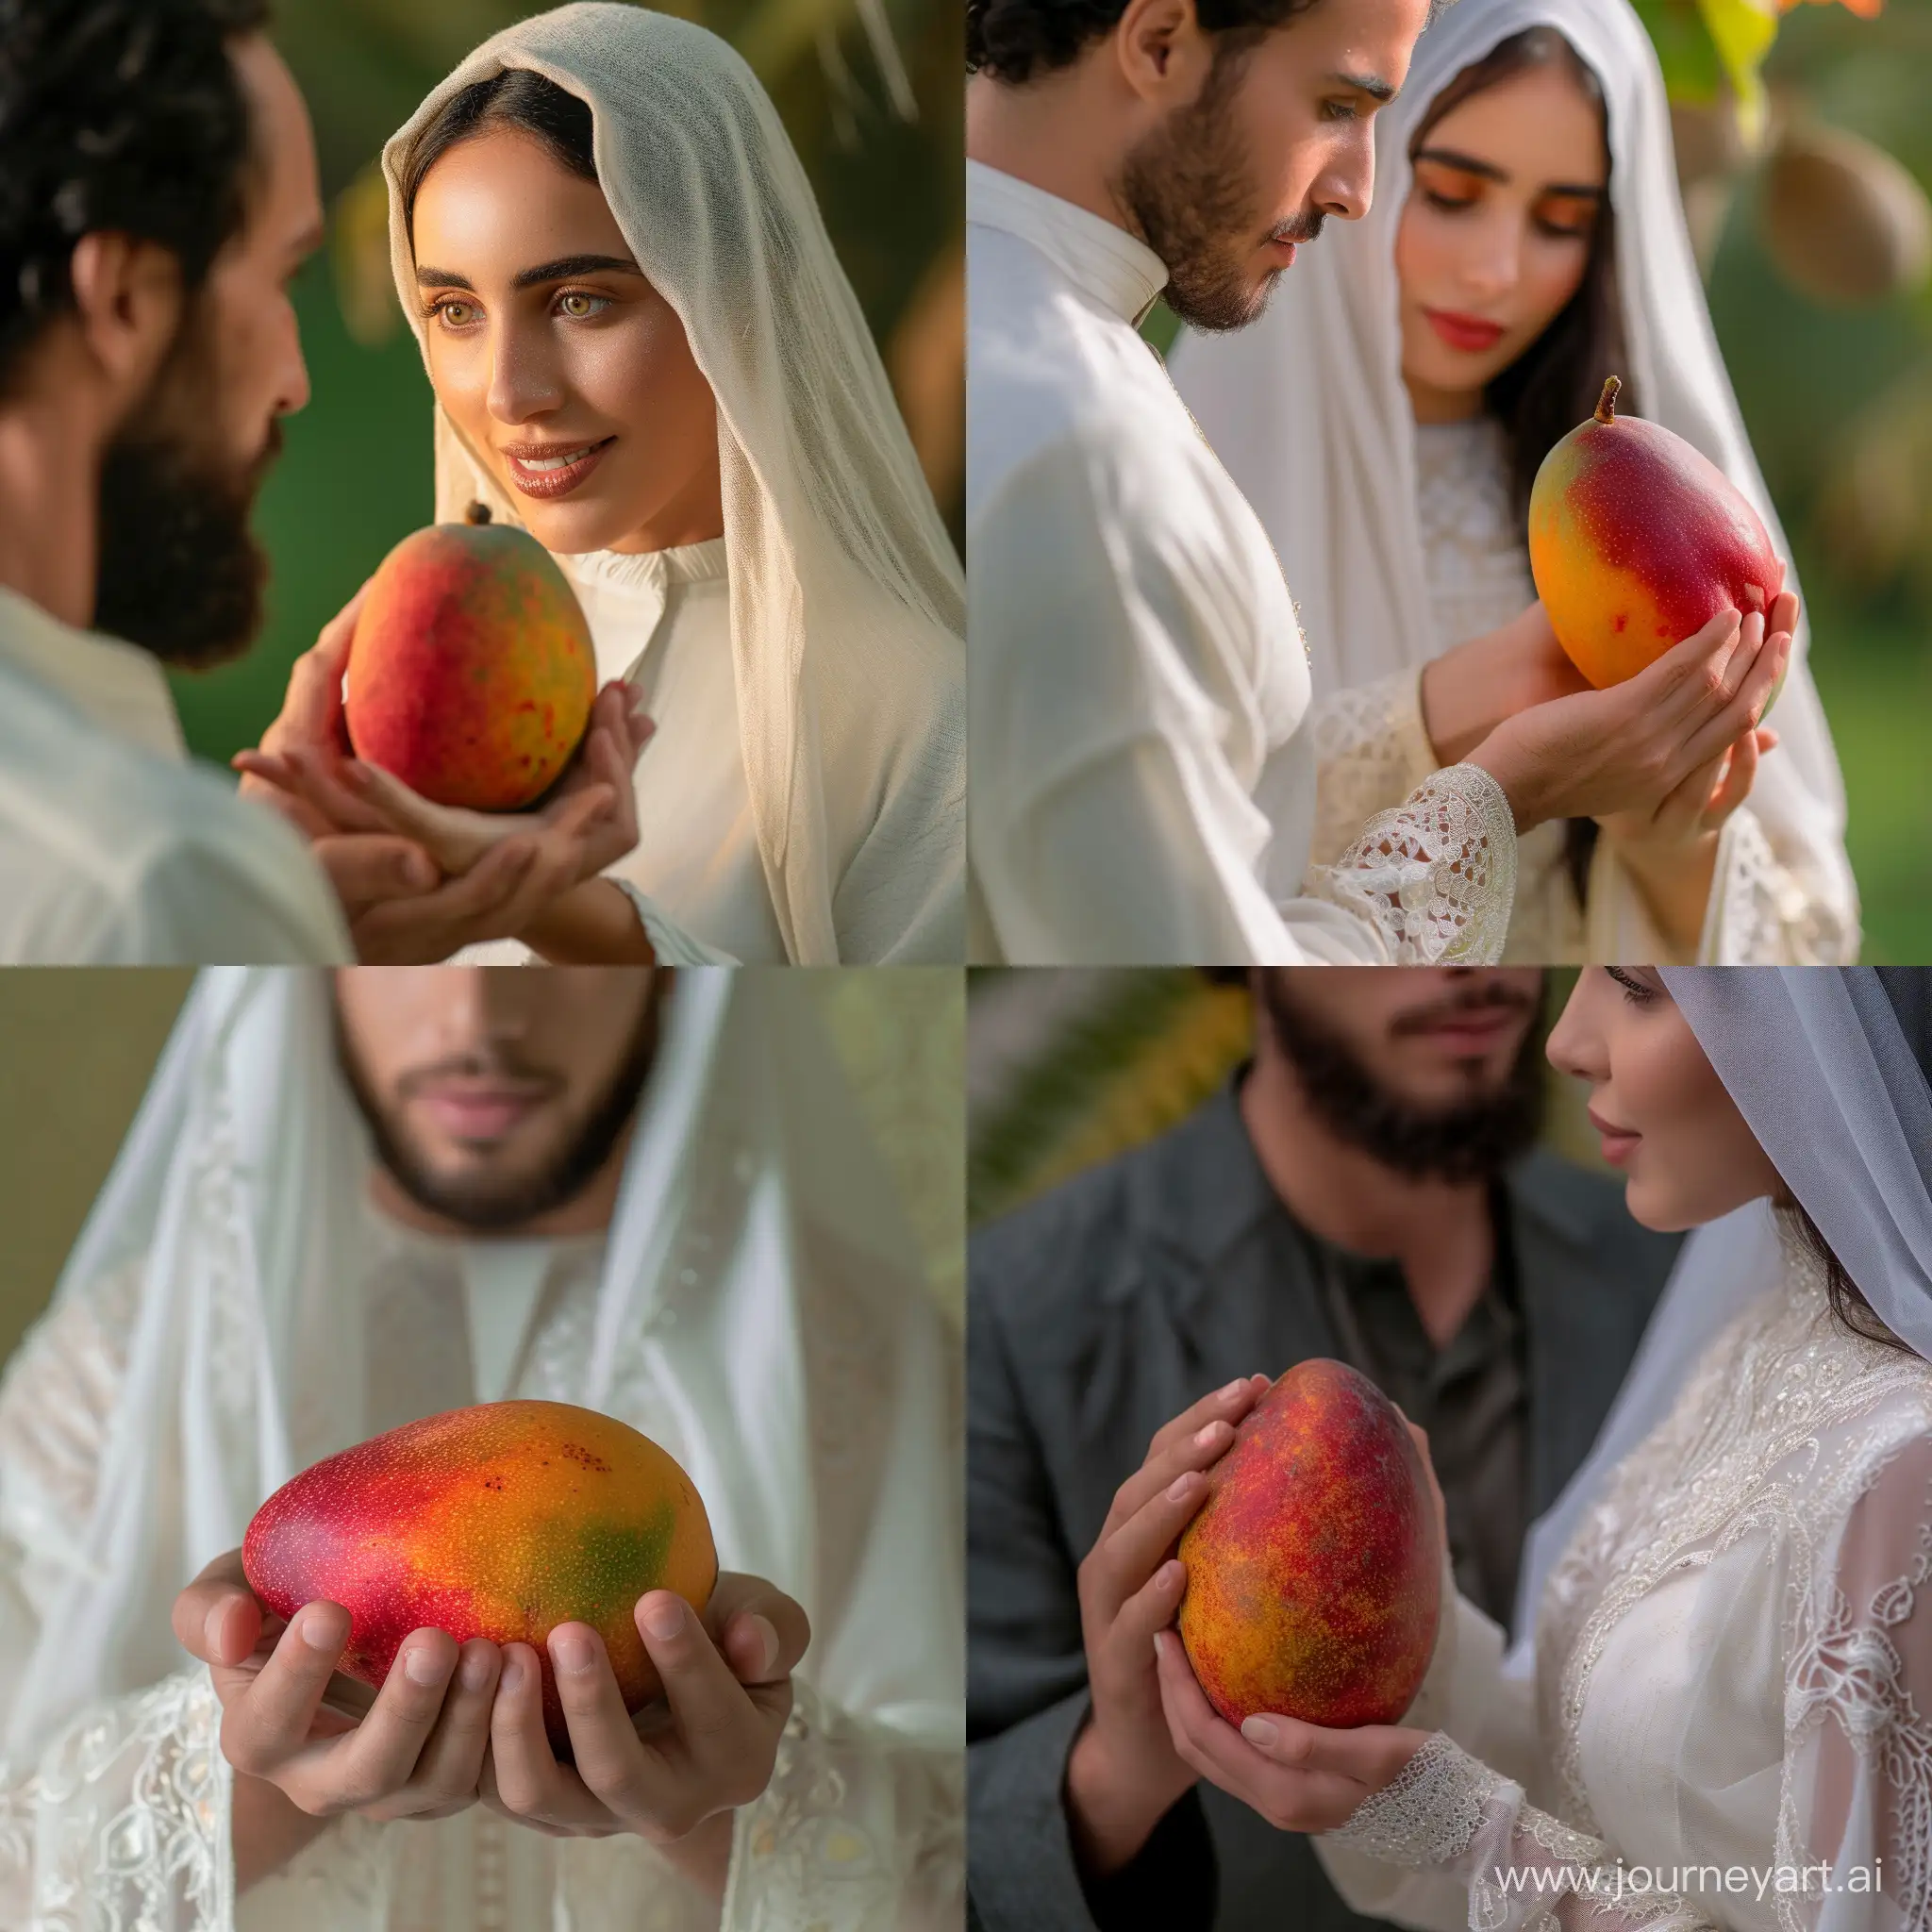 Captivating-Arab-Woman-Showcasing-Exquisite-Mango-in-Vibrant-Attire